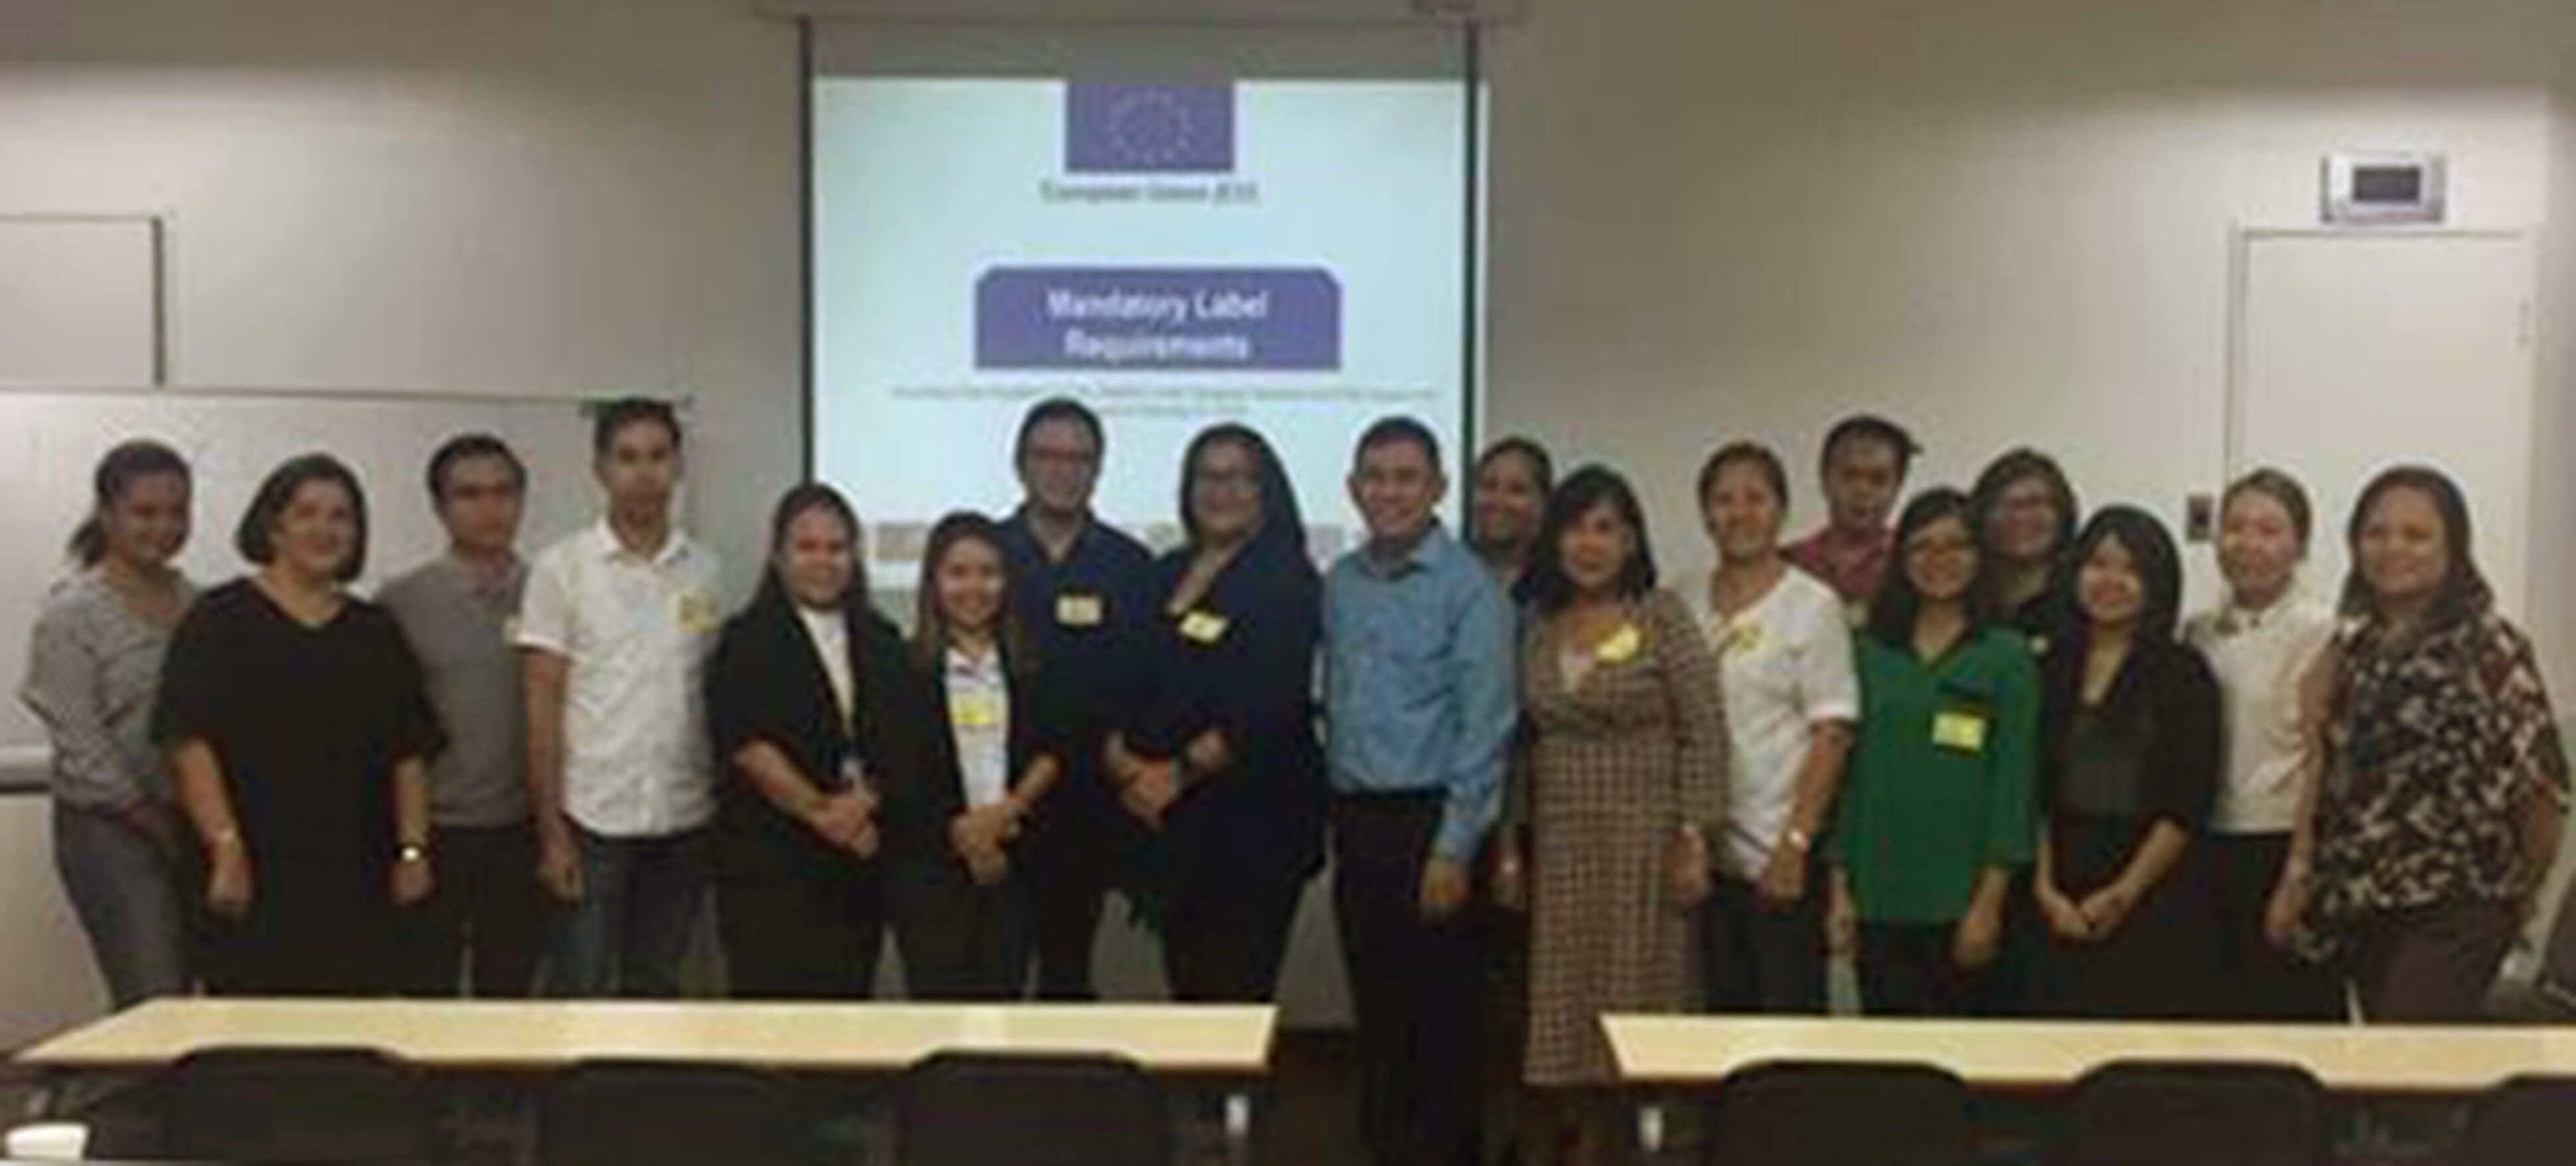 Anuga Participants at seminar on EU Labeling Requirements